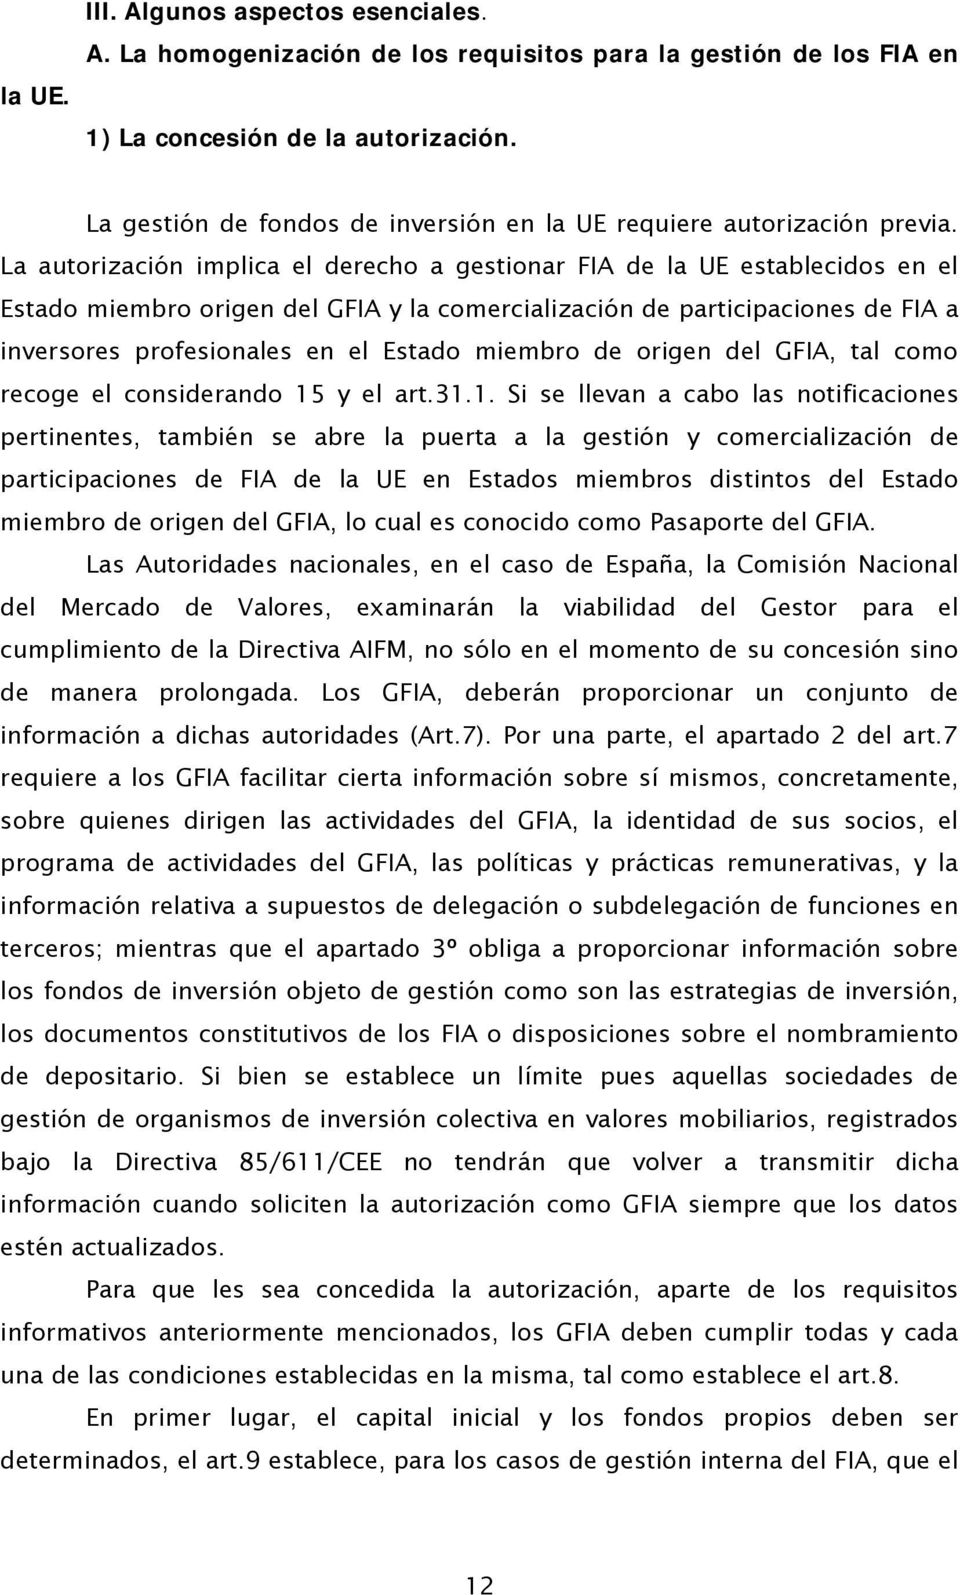 La autorización implica el derecho a gestionar FIA de la UE establecidos en el Estado miembro origen del GFIA y la comercialización de participaciones de FIA a inversores profesionales en el Estado